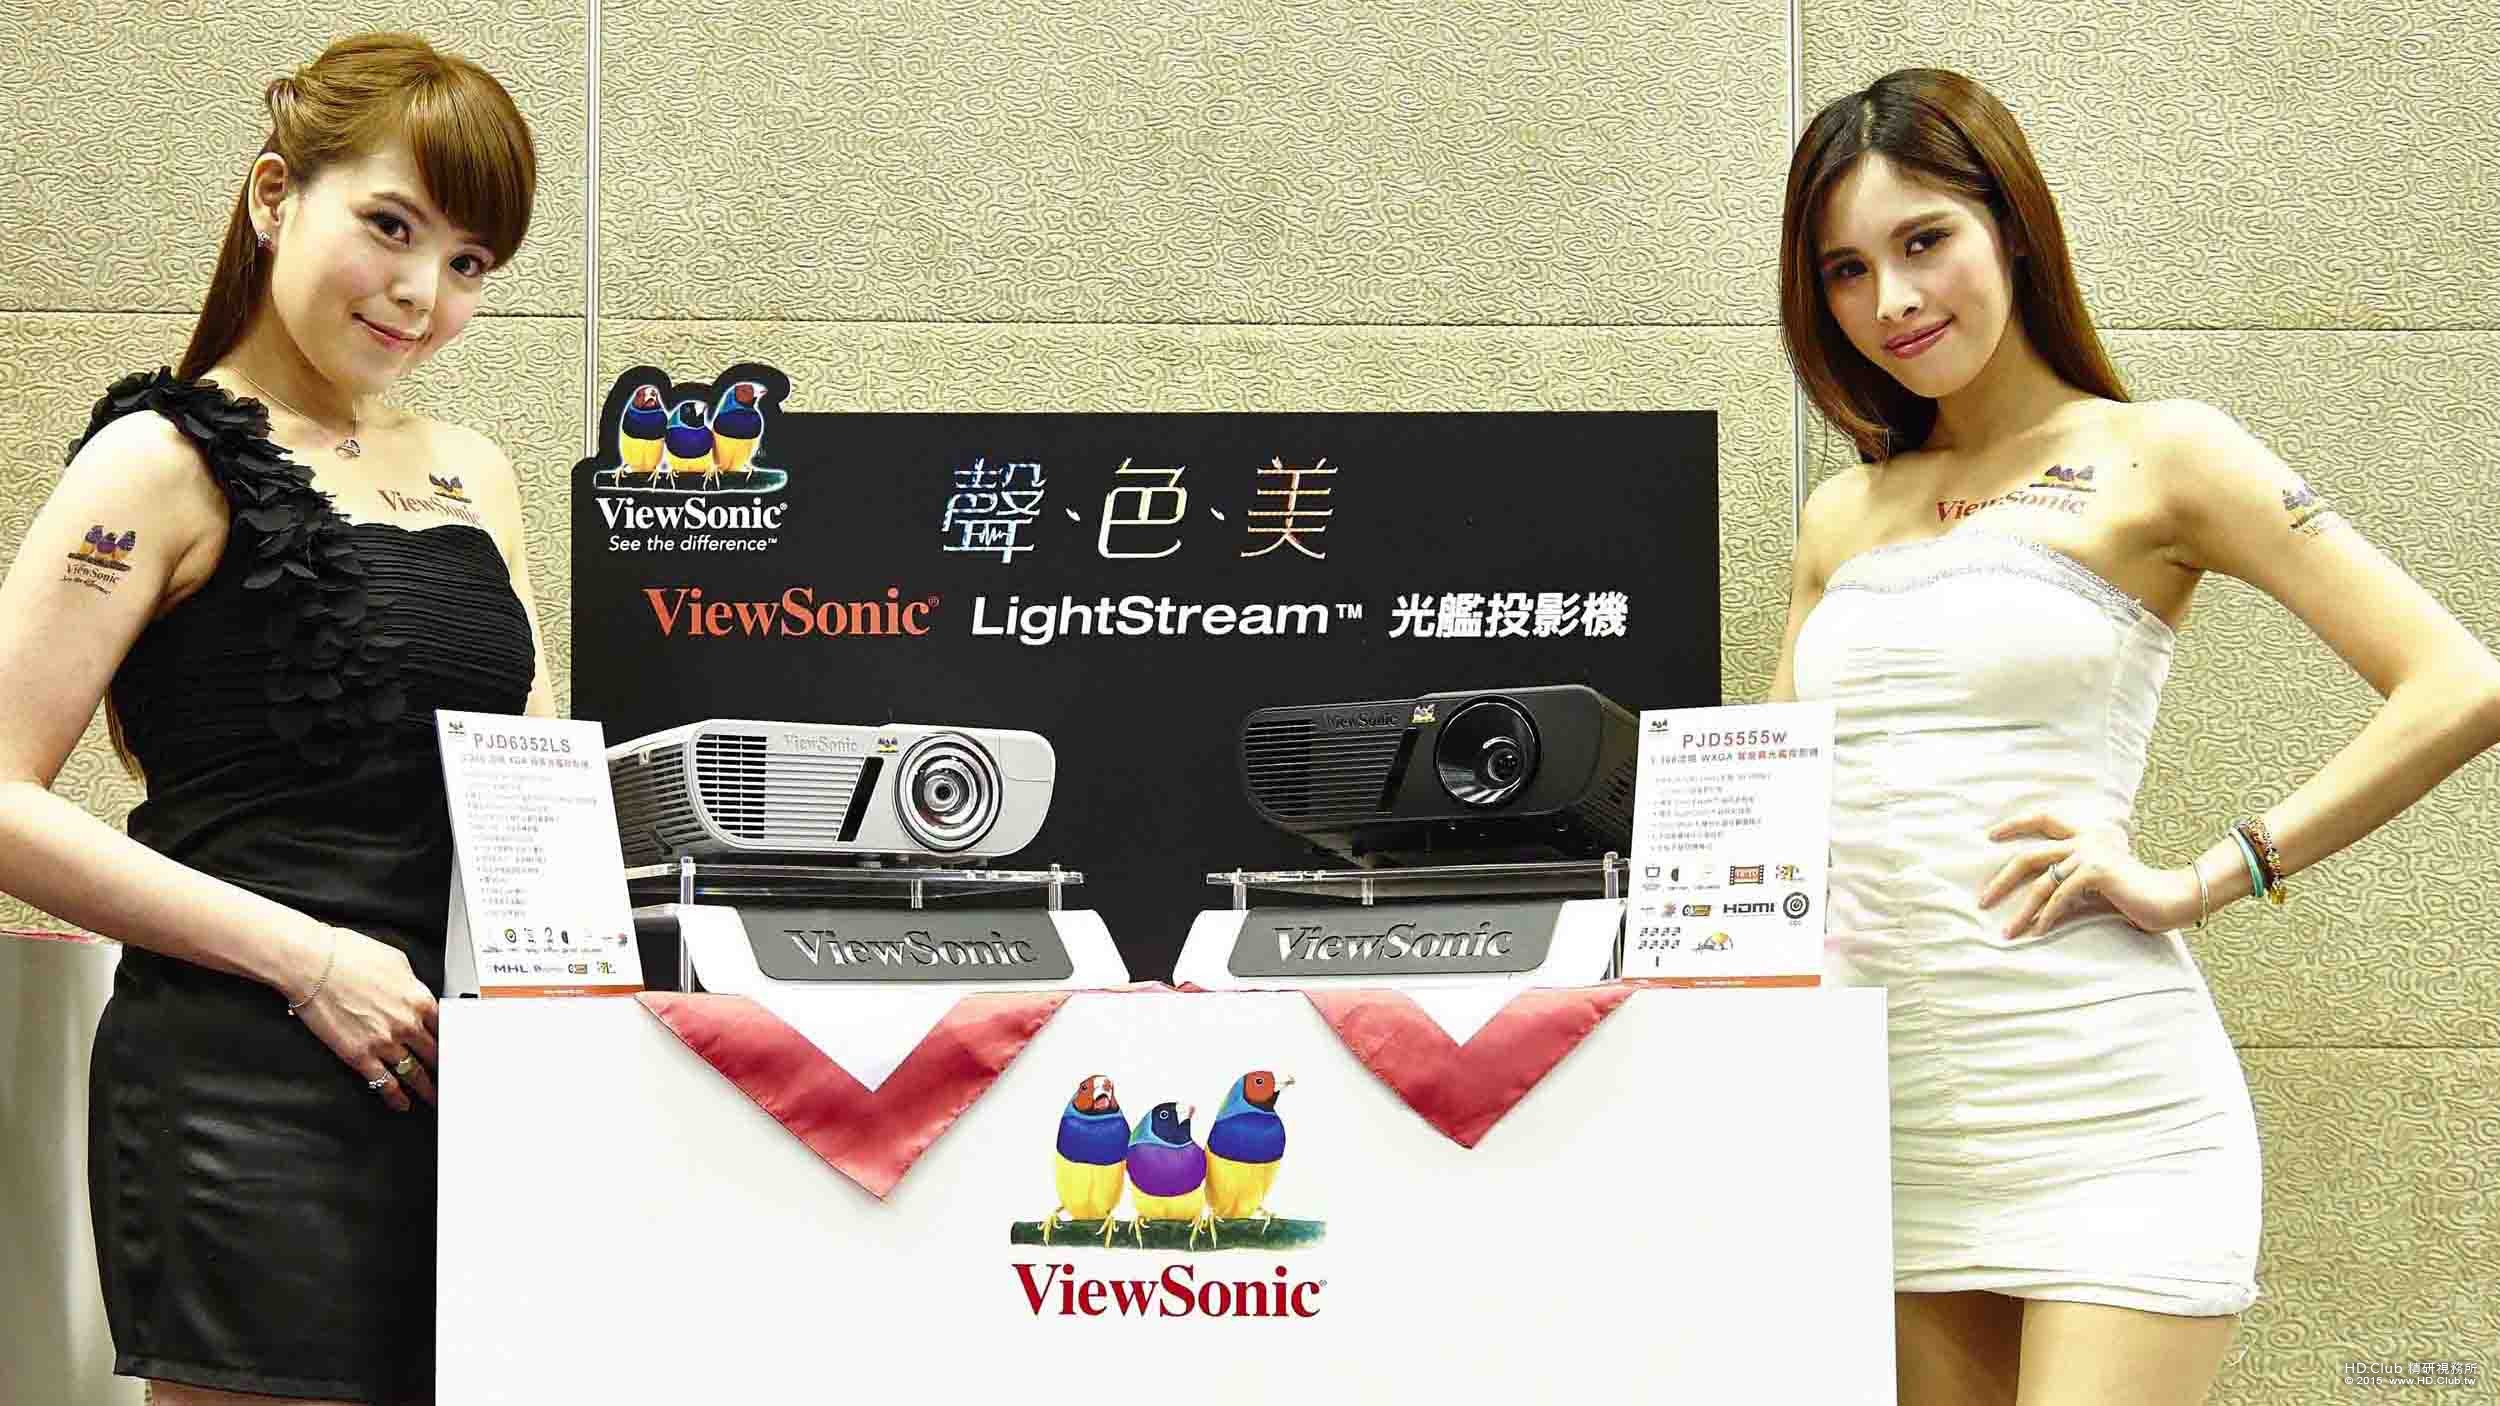 ViewSonic看準中小企業需求   光艦投影機旗艦系列全新上市  引領新一代聲、色、美潮流.jpg